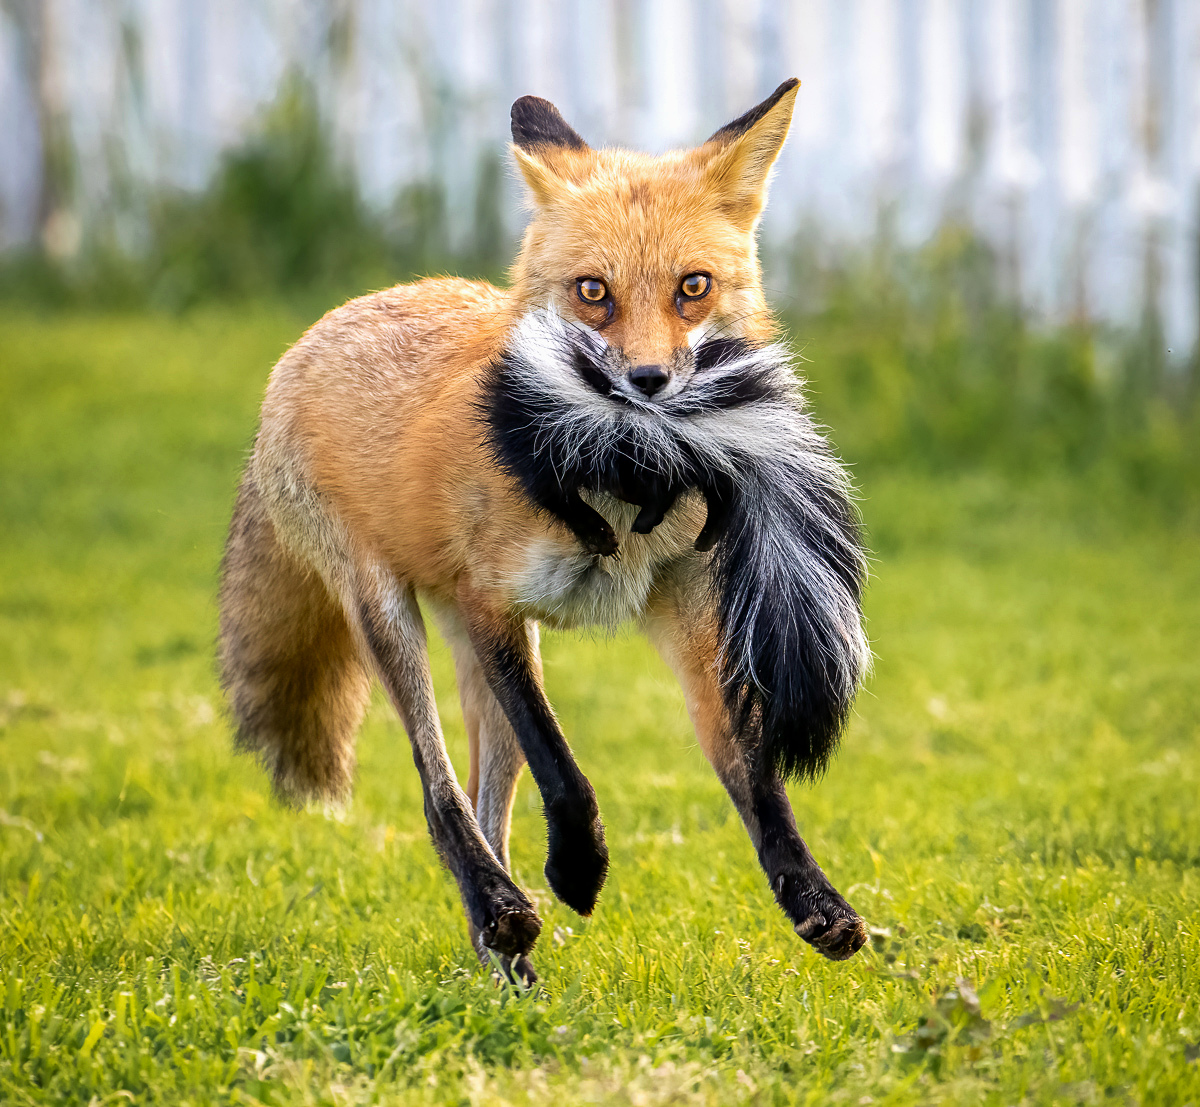 Fox with meal (skunk)-sh.jpg